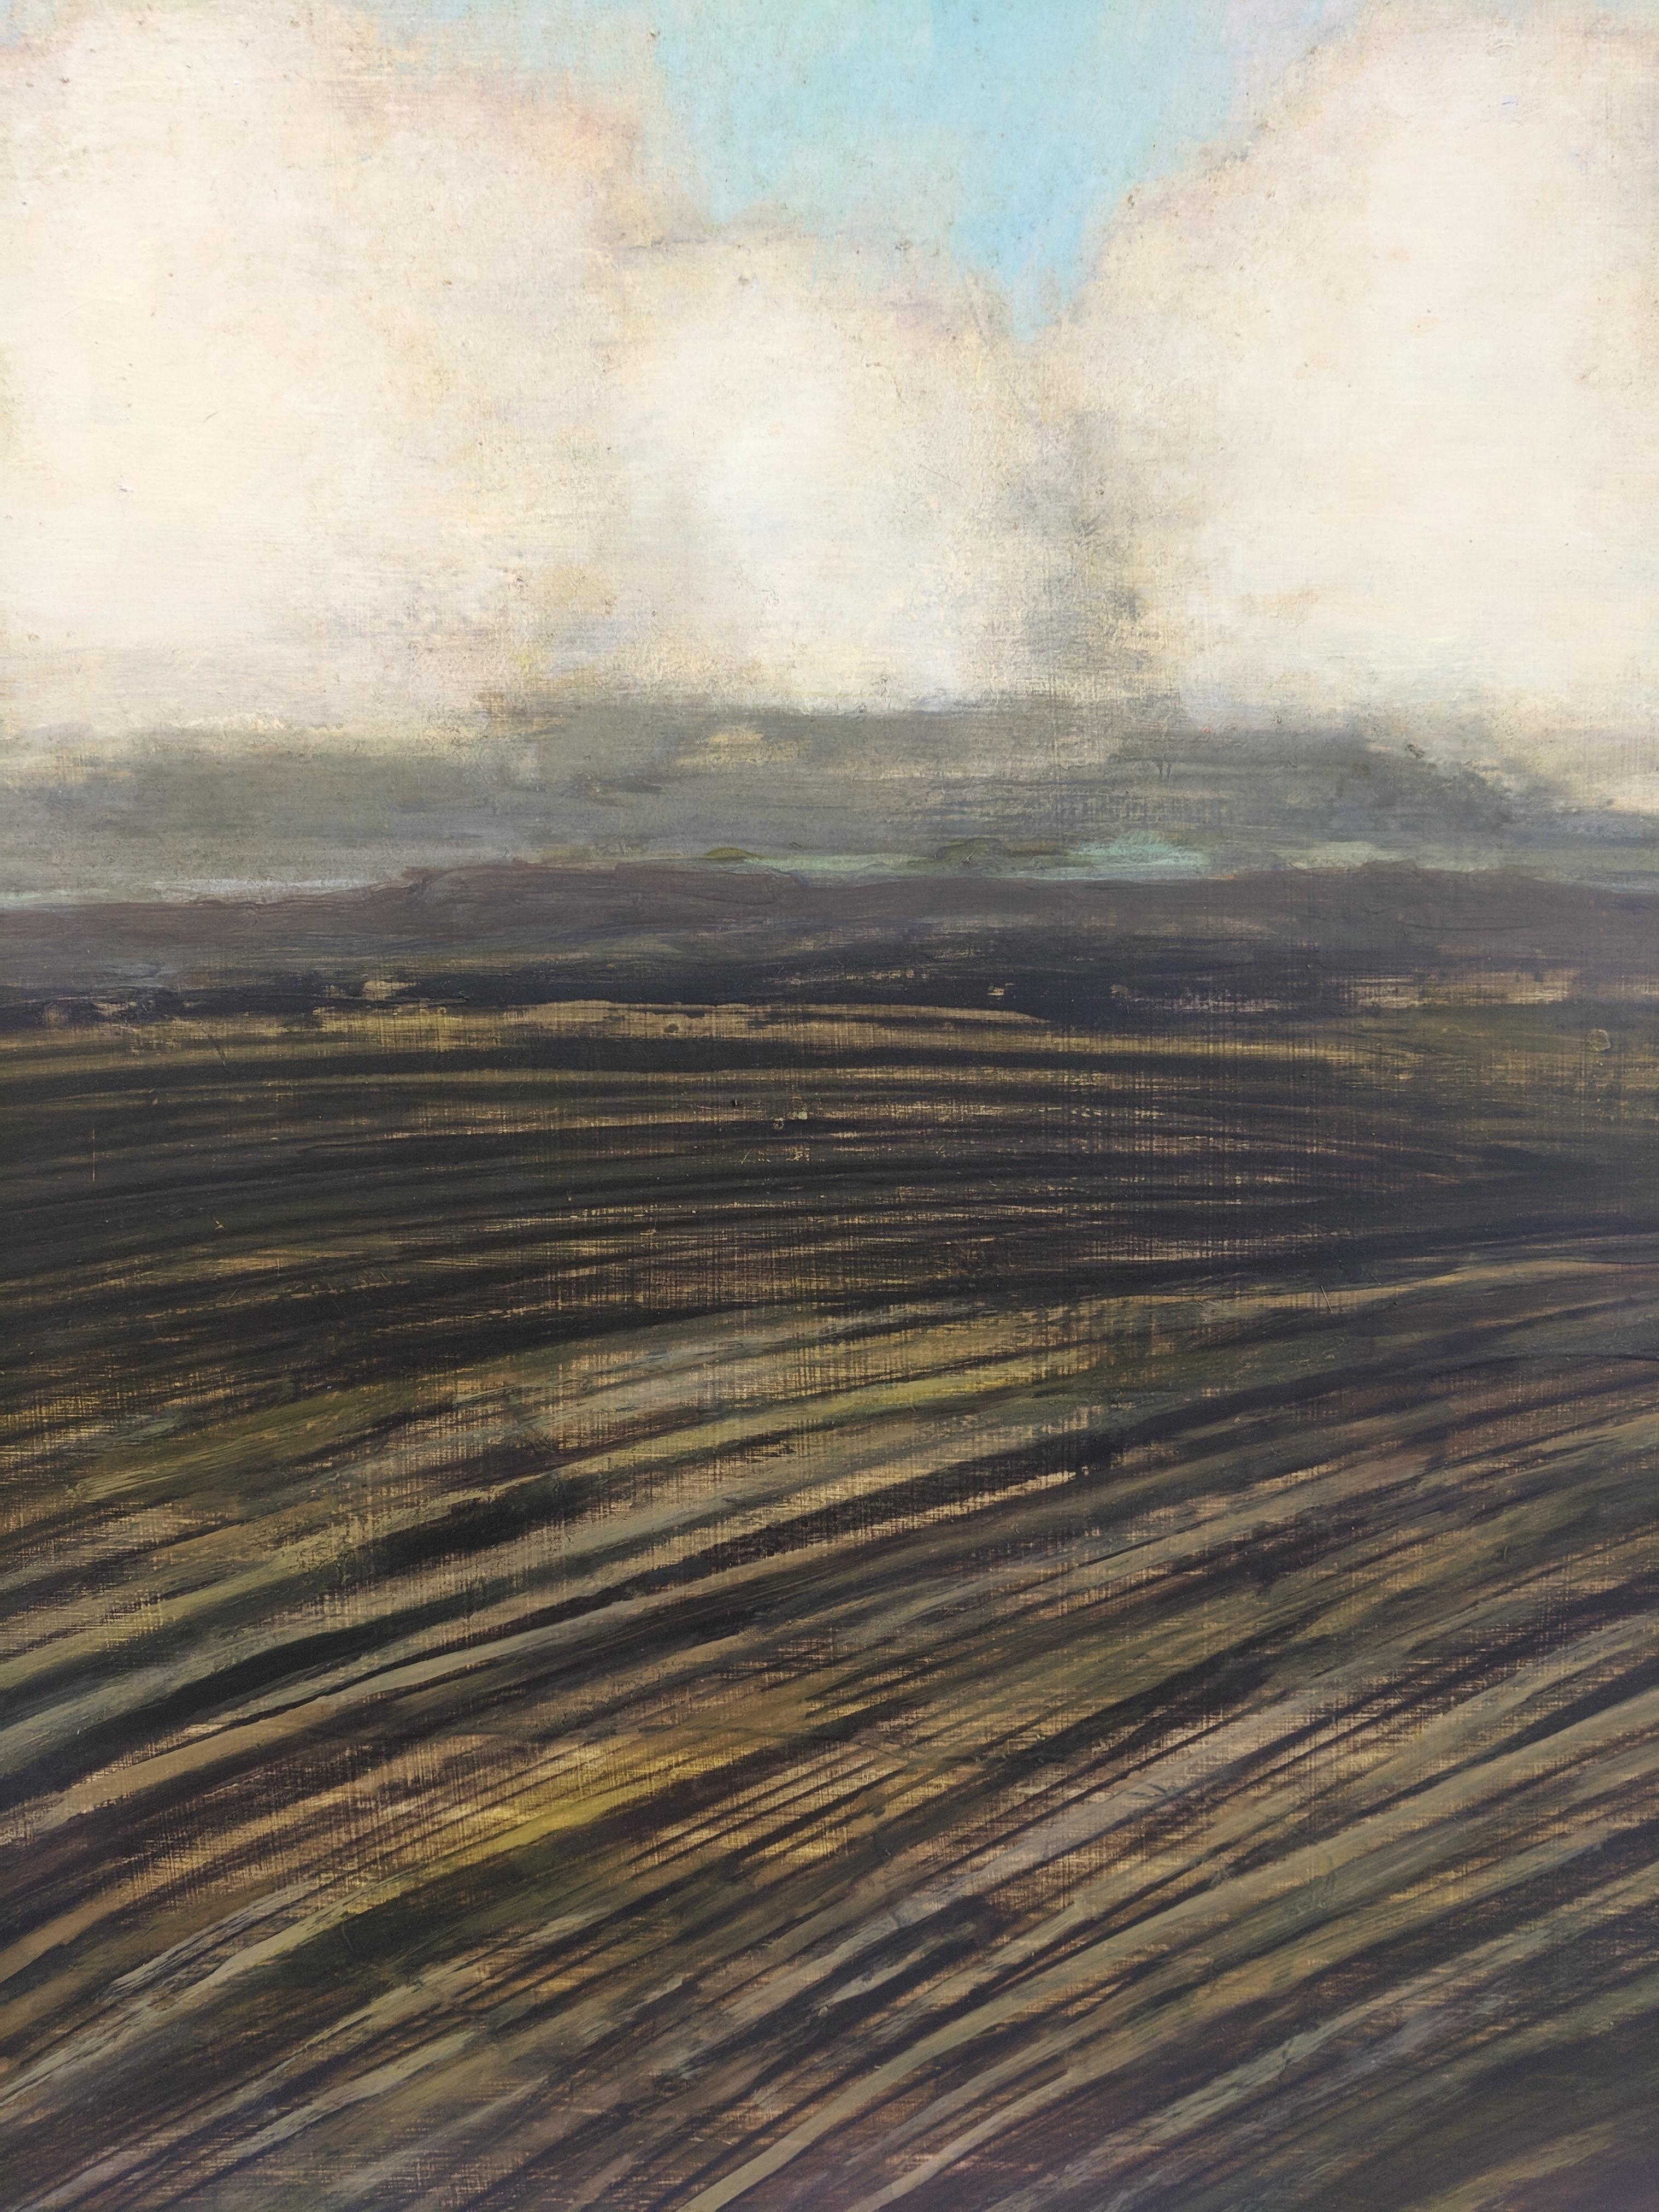 Le drame du ciel de la vallée de l'Hudson, dans l'État de New York, est capturé dans cette peinture de paysage de David Konigsberg. L'artiste est largement reconnu pour ses nuages et cette peinture est l'une de ses meilleures - c'est une symphonie